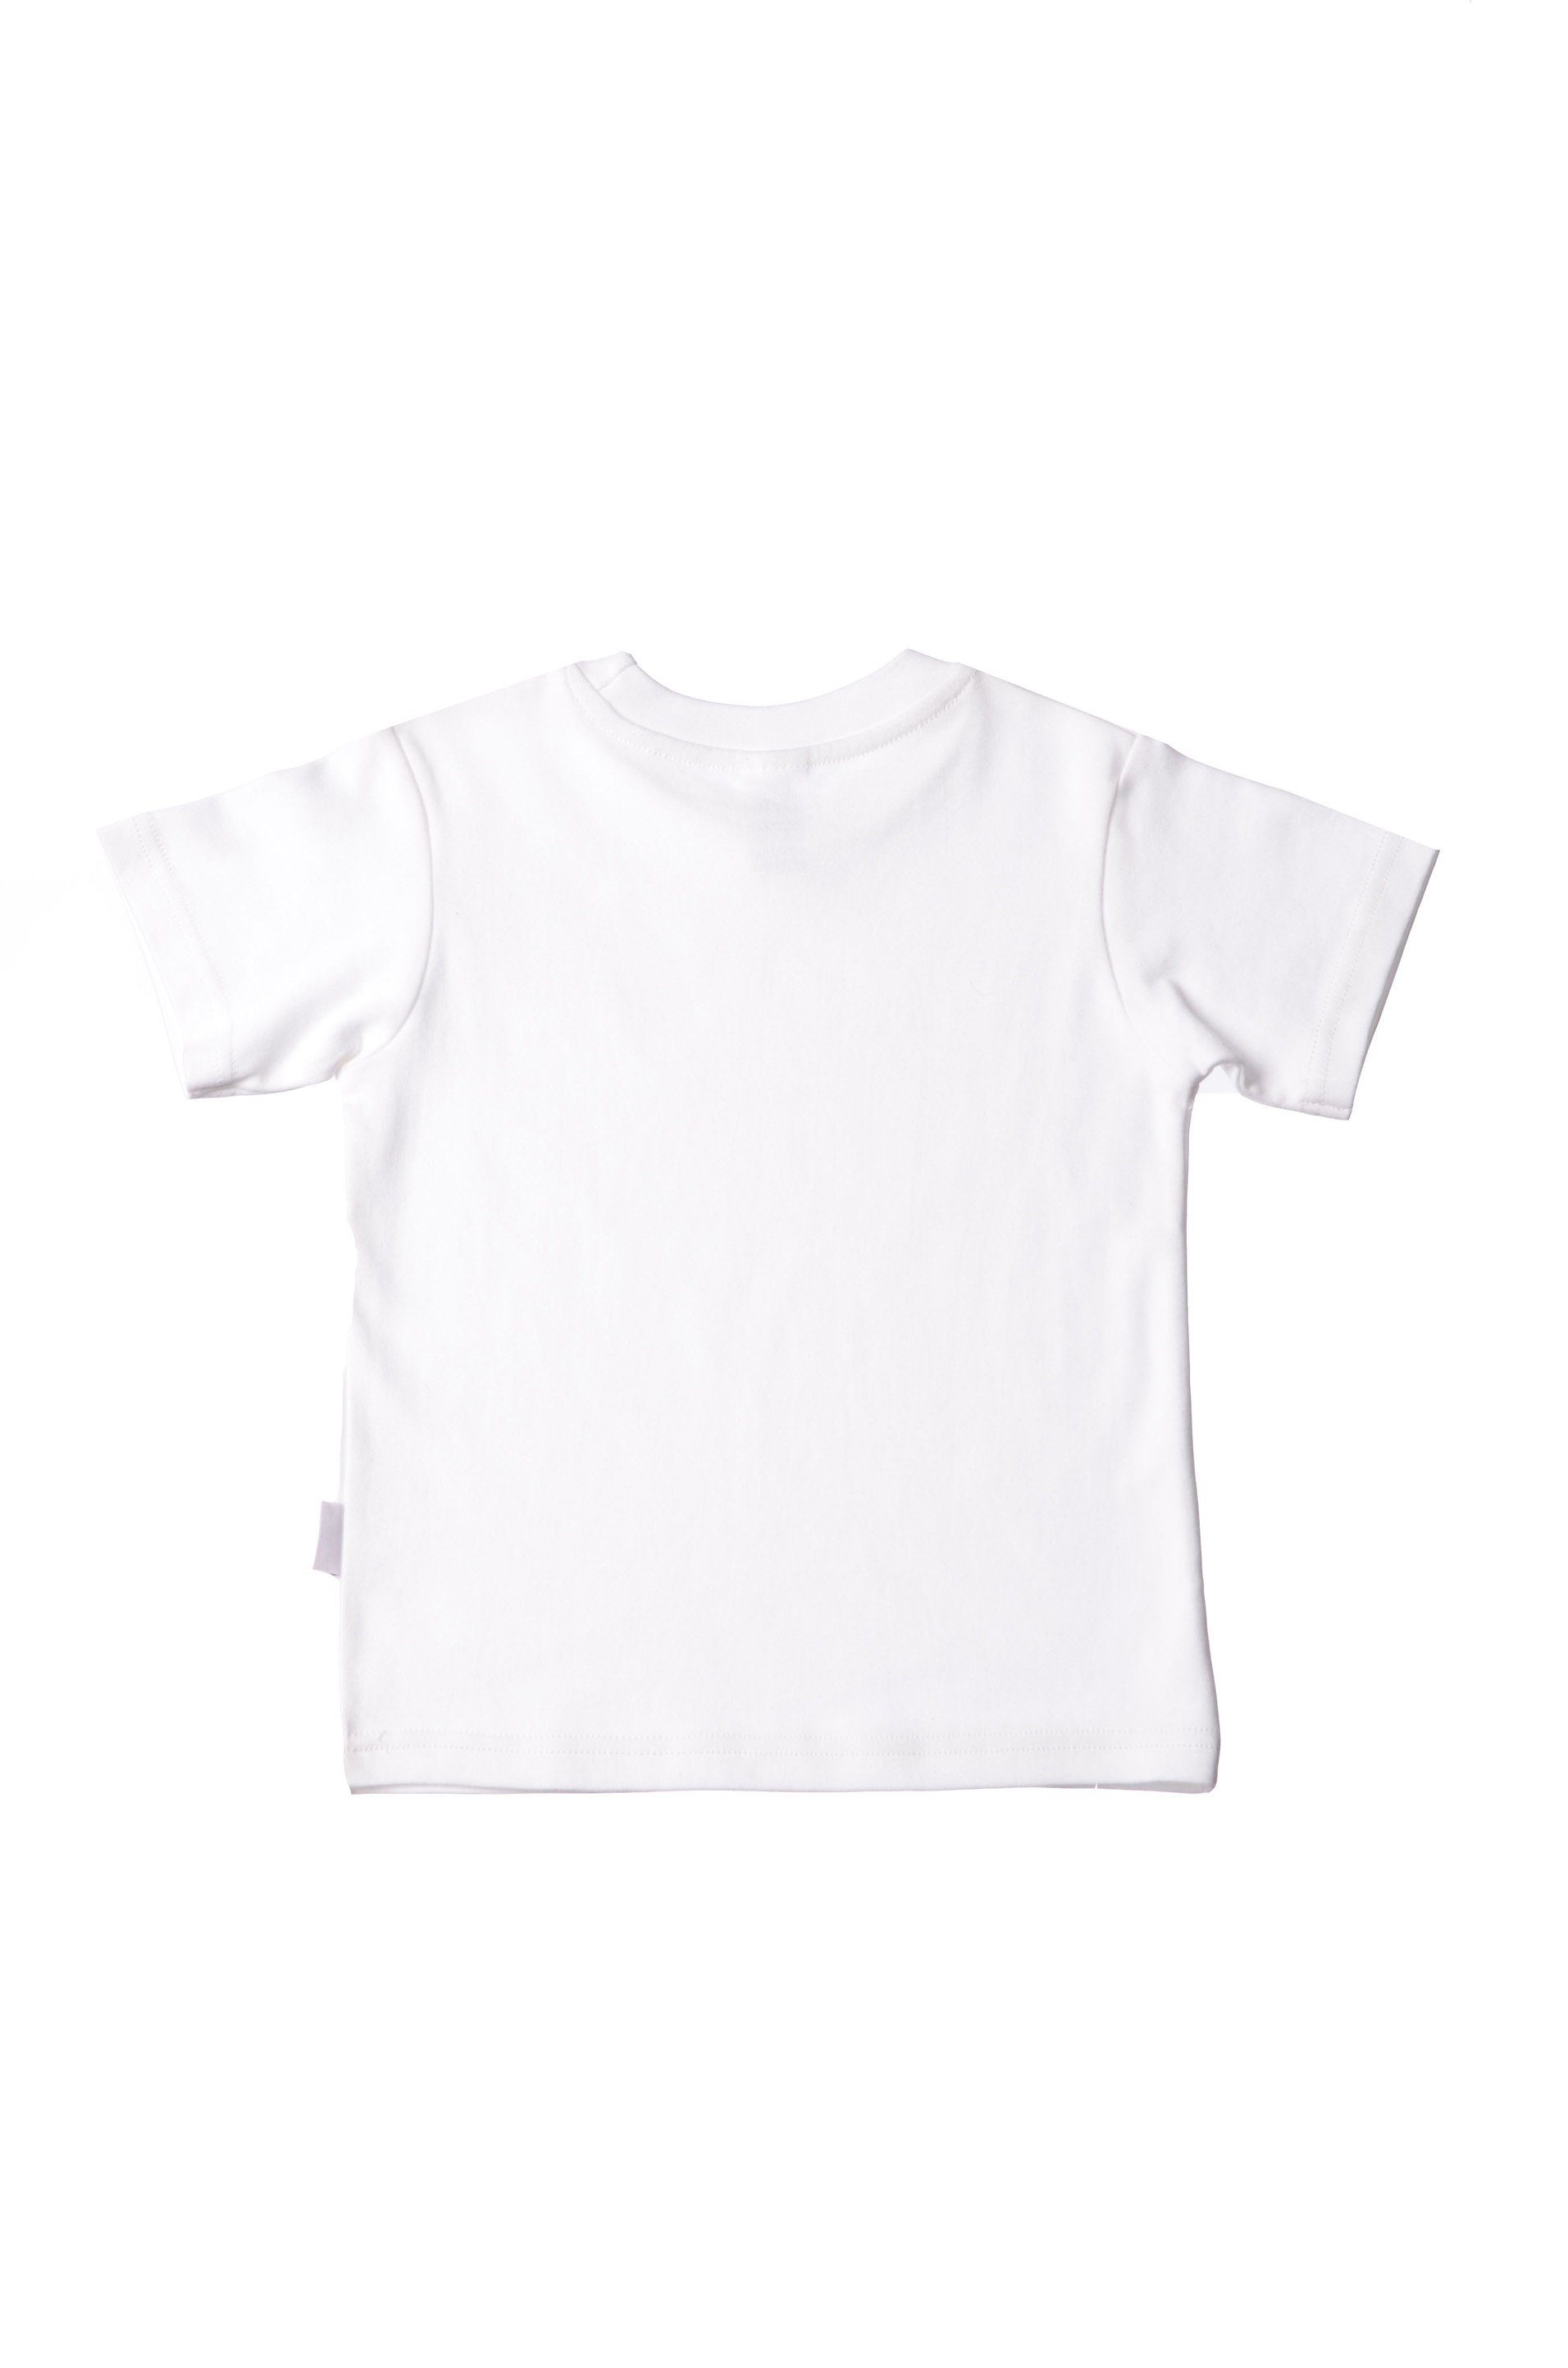 Baby T-Shirt Bear aus hochwertiger Liliput Bio-Baumwolle